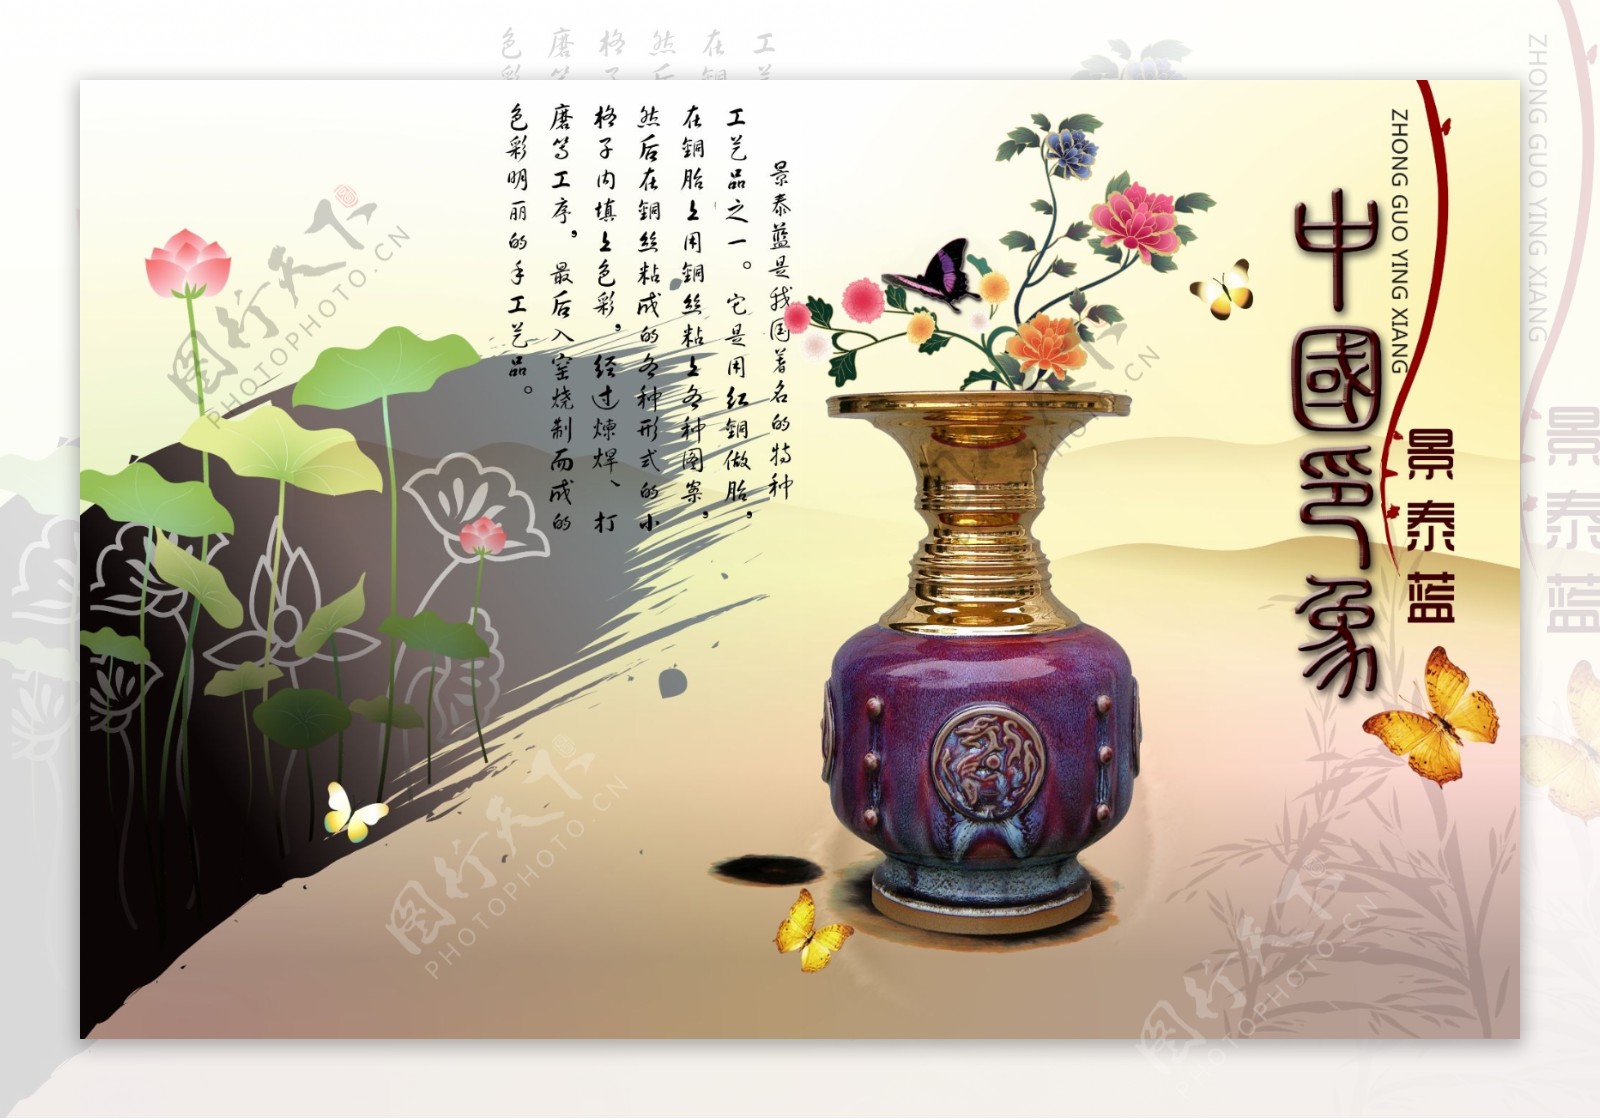 校园文化企业文化宣传中国印象紫琉璃景泰蓝